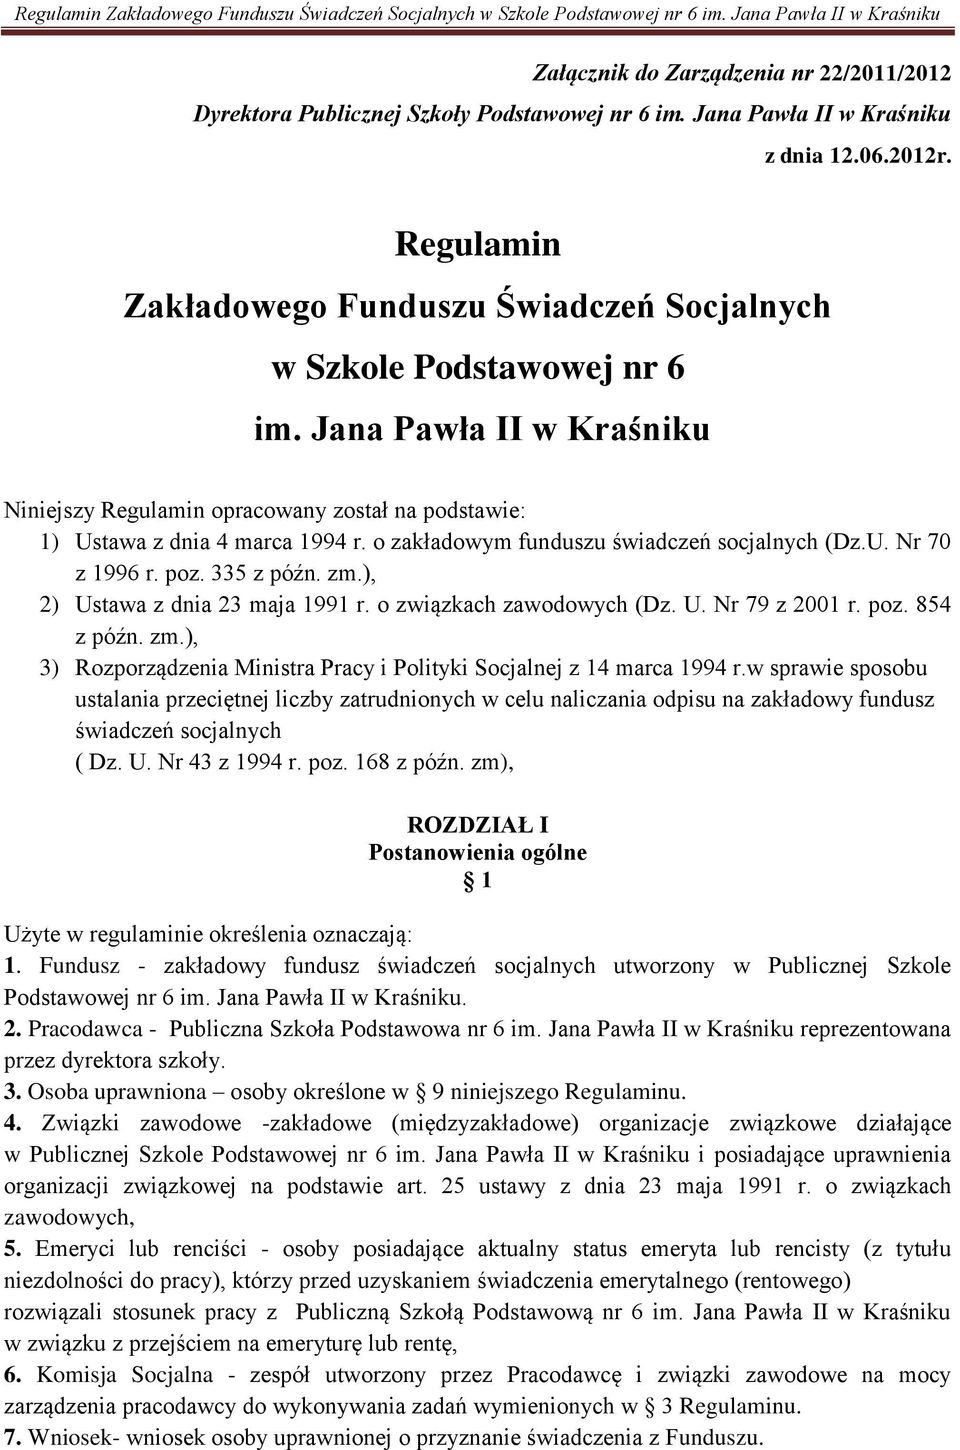 Jana Pawła II w Kraśniku Niniejszy Regulamin opracowany został na podstawie: 1) Ustawa z dnia 4 marca 1994 r. o zakładowym funduszu świadczeń socjalnych (Dz.U. Nr 70 z 1996 r. poz. 335 z późn. zm.